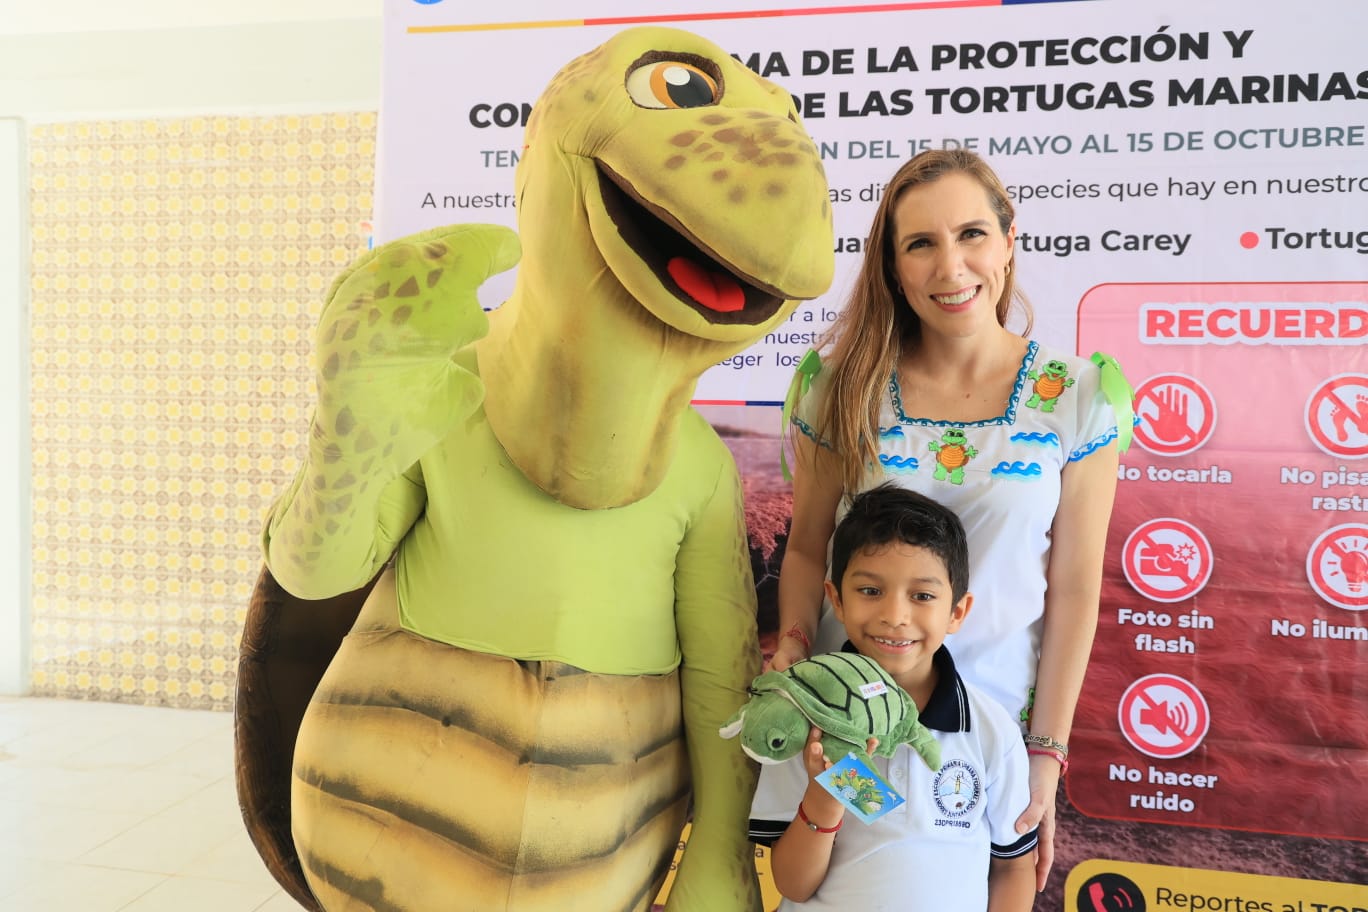 Atenea Gómez Ricalde, le apuesta a la educación ambiental en las escuelas